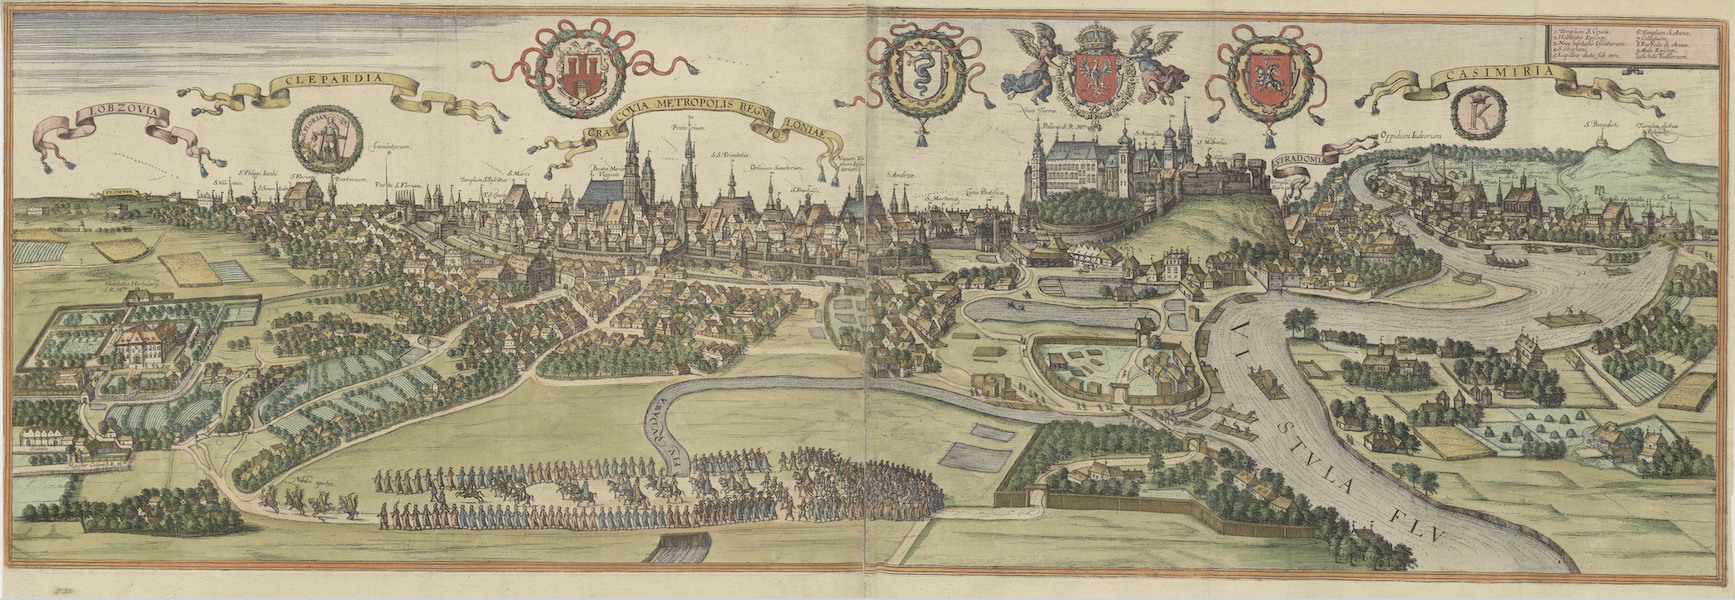 Civitates Orbis Terrarum Vol. 6 - Cracovia Metropolis Regni Poloniae (1617)